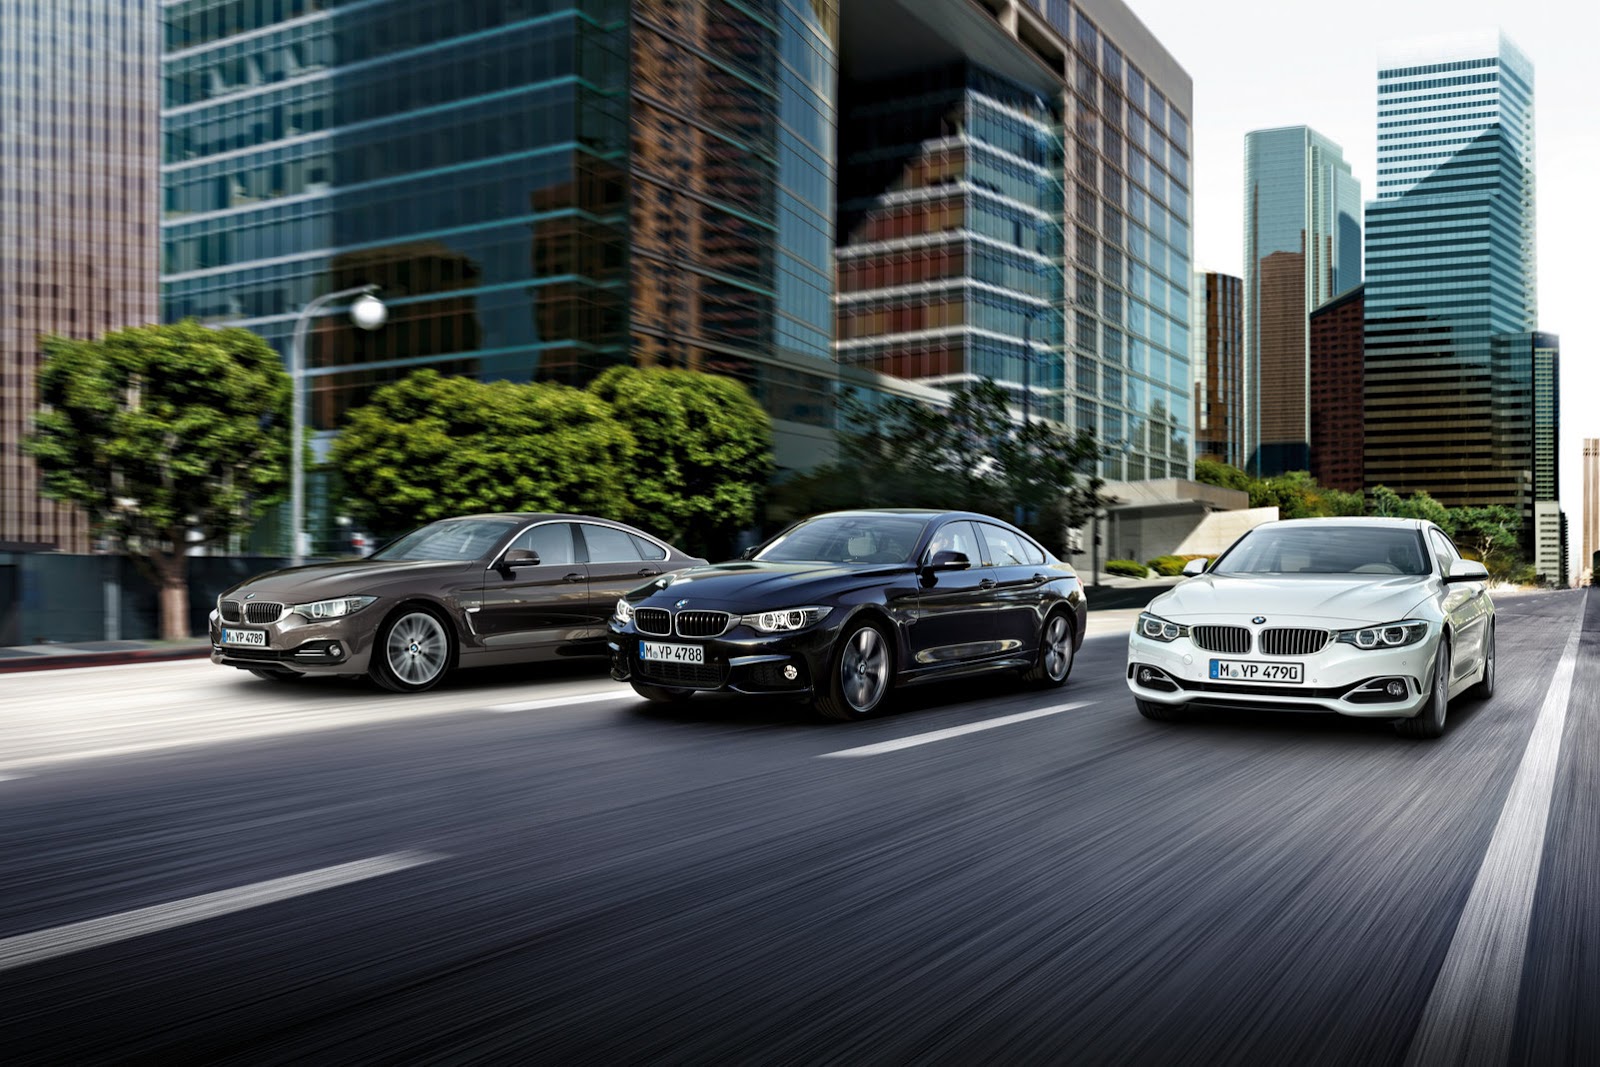 “بالفيديو” بي إم دبليو تكشف رسميا عن اخر سياراتها غران كوبيه الفئة الرابعة 2015 BMW 4 Series Gran Coupe